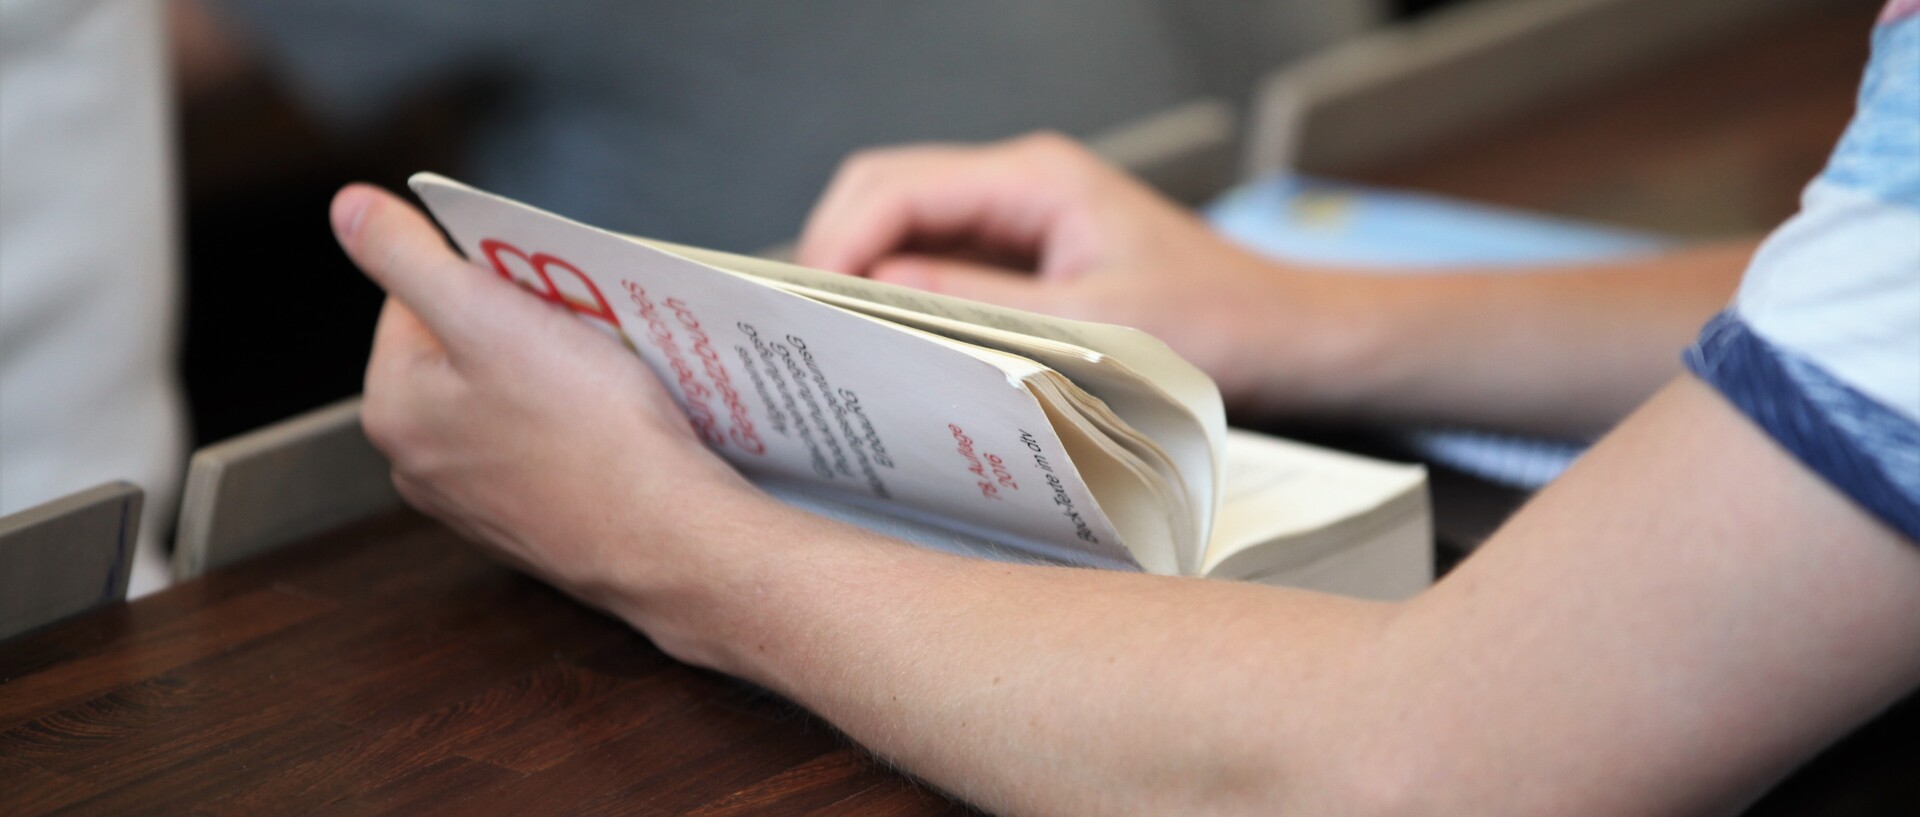 Ein aufgeschlagenes Buch wird gehalten, eine Hand blättert eine Seite um